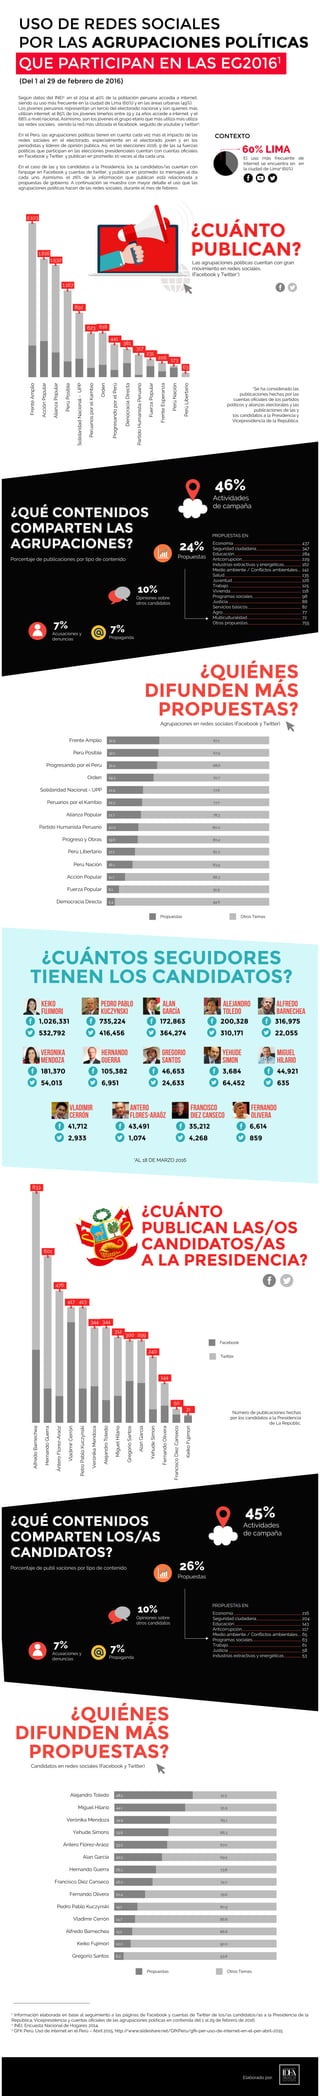 USO DE REDES SOCIALES
POR LAS AGRUPACIONES POLÍTICAS
QUE PARTICIPAN EN LAS EG20161
(Del 1 al 29 de febrero de 2016)
CONTEXTO
Según datos del INEI2,
en el 2014 el 40% de la población peruana accedía a internet,
siendo su uso más frecuente en la ciudad de Lima (60%) y en las áreas urbanas (49%).
Los jóvenes peruanos representan un tercio del electorado nacional y son quienes más
utilizan internet: el 85% de los jóvenes limeños entre 19 y 24 años accede a internet, y el
68% a nivel nacional. Asimismo, son los jóvenes el grupo etario que más utiliza más utiliza
las redes sociales, siendo la red más utilizada el facebook, seguido de youtube y twitter3
.
En el Perú, las agrupaciones políticas tienen en cuenta cada vez más el impacto de las
redes sociales en el electorado, especialmente en el electorado joven y en los
periodistas y líderes de opinión pública. Así, en las elecciones 2016, 9 de las 14 fuerzas
políticas que participan en las elecciones presidenciales cuentan con cuentas oﬁciales
en Facebook y Twitter, y publican en promedio 10 veces al día cada una.
En el caso de las y los candidatos a la Presidencia, los 14 candidatos/as cuentan con
fanpage en Facebook y cuentas de twitter, y publican en promedio 1o mensajes al día
cada uno. Asimismo, el 26% de la información que publican está relacionada a
propuestas de gobierno. A continuación se muestra con mayor detalle el uso que las
agrupaciones políticas hacen de las redes sociales, durante el mes de febrero.
60% LIMA
El uso más frecuente de
internet se encuentra en en
la ciudad de Lima2
(60%)
7%
*Se ha considerado las
publicaciones hechas por las
cuentas oﬁciales de los partidos
políticos y alianzas electorales y las
publicaciones de las y
los candidatos a la Presidencia y
Vicepresidencia de la República.
1
Información elaborada en base al seguimiento a las páginas de Facebook y cuentas de Twitter de los/as candidatos/as a la Presidencia de la
República, Vicepresidencia y cuentas oﬁciales de las agrupaciones políticas en contienda del 1 al 29 de febrero de 2016.
2
INEI. Encuesta Nacional de Hogares 2014.
3
GFK Perú. Uso de internet en el Perú – Abril 2015. http://www.slideshare.net/GfKPeru/gfk-per-uso-de-internet-en-el-per-abril-2015
¿CUÁNTO
PUBLICAN?
¿QUÉ CONTENIDOS
COMPARTEN LAS
AGRUPACIONES?
¿QUIÉNES
DIFUNDEN MÁS
PROPUESTAS?
¿CUÁNTOS SEGUIDORES
TIENEN LOS CANDIDATOS?
Las agrupaciones políticas cuentan con gran
movimiento en redes sociales.
(Facebook y Twitter*)
2,103
1,616
1,532
1,167
892
623 618
441
381
317
231
206 173
63
FrenteAmplio
AcciónPopular
AlianzaPopular
PerúPosible
SolidaridadNacional-UPP
PeruanosporelKambio
Orden
ProgresandoporelPerú
DenocraciaDirecta
PartidoHumanistaPeruano
FuerzaPopular
FrenteEsperanza
PerúNación
PerúLibertario
Acusaciones y
denuncias
7%
Propaganda
10%
Opiniones sobre
otros candidatos
46%
Actividades
de campaña
24%
PropuestasPorcentaje de publicaciones por tipo de contenido
Agrupaciones en redes sociales (Facebook y Twitter)
Propuestas
PROPUESTAS EN:
Economía
Seguridad ciudadana
Educación
Antcorrupción
Industrias extractivas y energéticas
Medio ambiente / Conﬂictos ambientales
Salud
Juventud
Trabajo
Vivienda
Programas sociales
Justicia
Servicios básicos
Agro
Multiculturalidad
Otras propuestas
437
347
284
229
162
142
135
126
125
118
98
88
82
77
72
755
7%
¿QUÉ CONTENIDOS
COMPARTEN LOS/AS
CANDIDATOS?
Acusaciones y
denuncias
7%
Propaganda
10%
Opiniones sobre
otros candidatos
45%
Actividades
de campaña
26%
Propuestas
Porcentaje de publi xaciones por tipo de contenido
PROPUESTAS EN:
Economía
Seguridad ciudadana
Educación
Antcorrupción
Medio ambiente / Conﬂictos ambientales
Programas sociales
Trabajo
Justicia
Industrias extractivas y energéticas
216
204
143
117
65
63
61
58
53
Frente Amplio
Perù Posible
Progresando por el Perú
Orden
Solidaridad Nacional - UPP
Peruanos por el Kambio
Alianza Popular
Partido Humanista Peruano
Progreso y Obras
Perú Nación
Acción Popular
Fuerza Popular
Democracia Directa
32.9
32.1
31.4
29.3
22.4
22.3
21.7
20.0
19.6
16.1
11.7
8.1
5.4
67.1
67.9
68.6
70.7
77.6
77.7
78.3
80.0
80.4
Perú Libertario 17.7 82.3
83.9
88.3
91.9
94.6
Otros Temas
KEIKO
FUJIMORI
1,026,331
532,792
PEDRO PABLO
KUCZYNSKI
735,224
416,456
ALAN
GARCÍA
172,863
364,274
ALEJANDRO
TOLEDO
200,328
310,171
ALFREDO
BARNECHEA
316,975
22,055
VERONIKA
MENDOZA
181,370
54,013
HERNANDO
GUERRA
105,382
6,951
GREGORIO
SANTOS
46,653
24,633
YEHUDE
SIMON
3,684
64,452
MIGUEL
HILARIO
44,921
635
VLADIMIR
CERRÓN
41,712
2,933
ANTERO
FLORES-ARAÓZ
43,491
1,074
FRANCISCO
DIEZ CANSECO
35,212
4,268
FERNANDO
OLIVERA
6,614
859
*AL 18 DE MARZO 2016
¿CUÁNTO
PUBLICAN LAS/OS
CANDIDATOS/AS
A LA PRESIDENCIA?
AlfredoBarnechea
HernandoGuerra
ÁnteroFlorez-Araóz
VladimirCerrón
PetroPabloKuczynski
VerónikaMendoza
AlejandroToledo
MiguelHilario
GregorioSantos
AlanGarcía
YehudeSimon
FernandoOlivera
FranciscoDiezCanseco
KeikoFujimori
833
601
476
417 413
344 344
312
300 299
240
144
50
31
Facebook
Twitter
Número de publicaciones hechas
por los candidatos a la Presidencia
de La Repúblic.
¿QUIÉNES
DIFUNDEN MÁS
PROPUESTAS?
Candidatos en redes sociales (Facebook y Twitter)
Alejandro Toledo
Miguel Hilario
Verónika Mendoza
Yehude Simons
Ántero Flórez-Aráoz
Alan García
Hernando Guerra
Francisco Diez Canseco
Fernando Olivera
Pedro Pablo Kuczynski
Vladimir Cerrón
Alfredo Barnechea
48.5
44.1
34.9
33.8
33.0
30.5
26.2
26.0
20.4
19.1
14.7
13.2
51.5
55.9
65.1
66.3
67.0
69.5
73.8
74.0
79.6
80.9
86.8
86.8
Propuestas
Keiko Fujimori
Gregorio Santos
10.0
6.2
90.0
93.8
Otros Temas
Elaborado por:
 